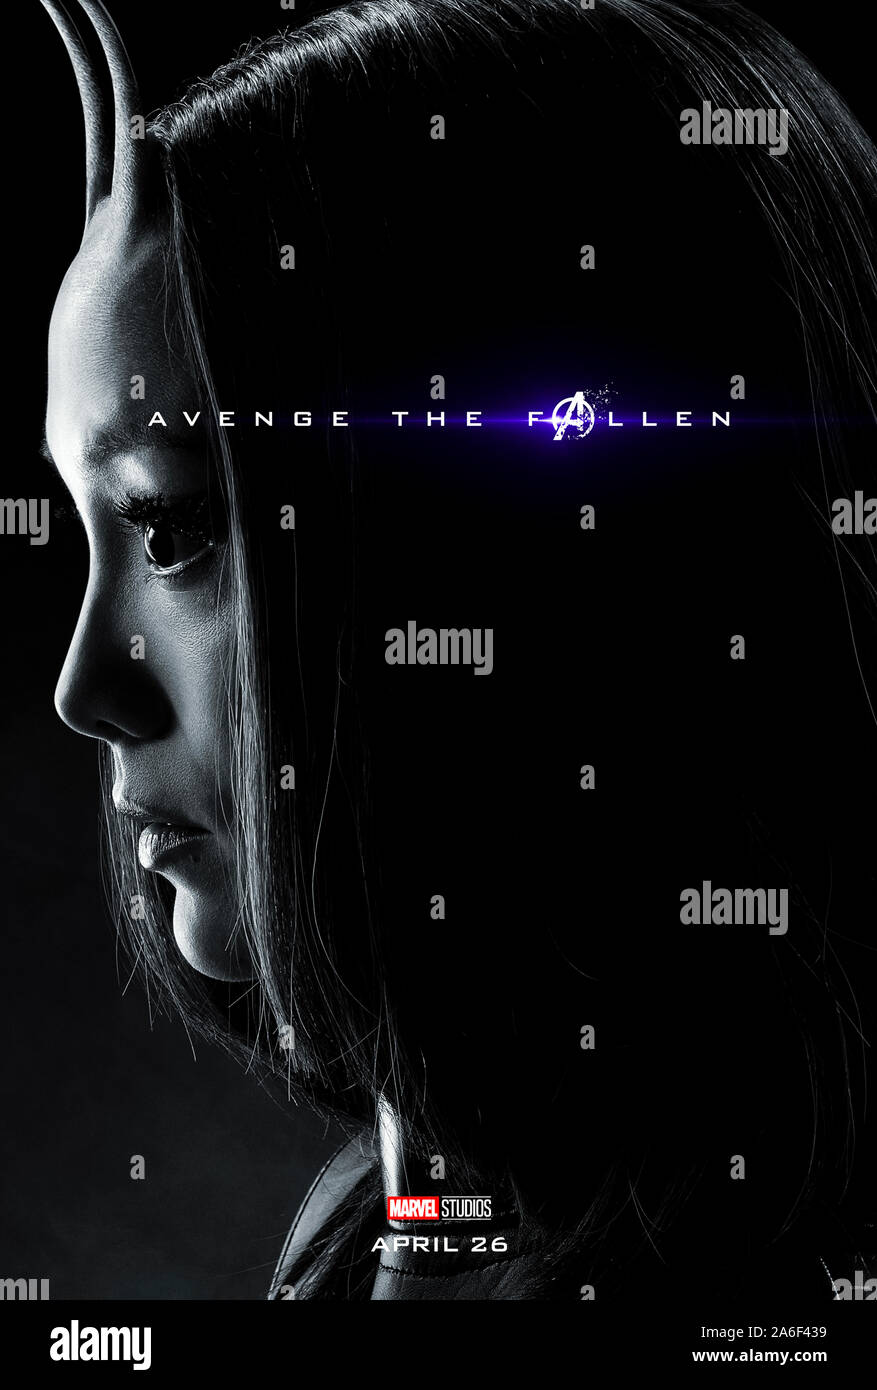 Affiche pour l'avance de caractères Avengers : Endgame (2019) réalisé par Anthony et Joe Russo avec Pom Klementieff comme Mantis. La conclusion épique et 22e film dans l'univers cinématographique de Marvel. Banque D'Images